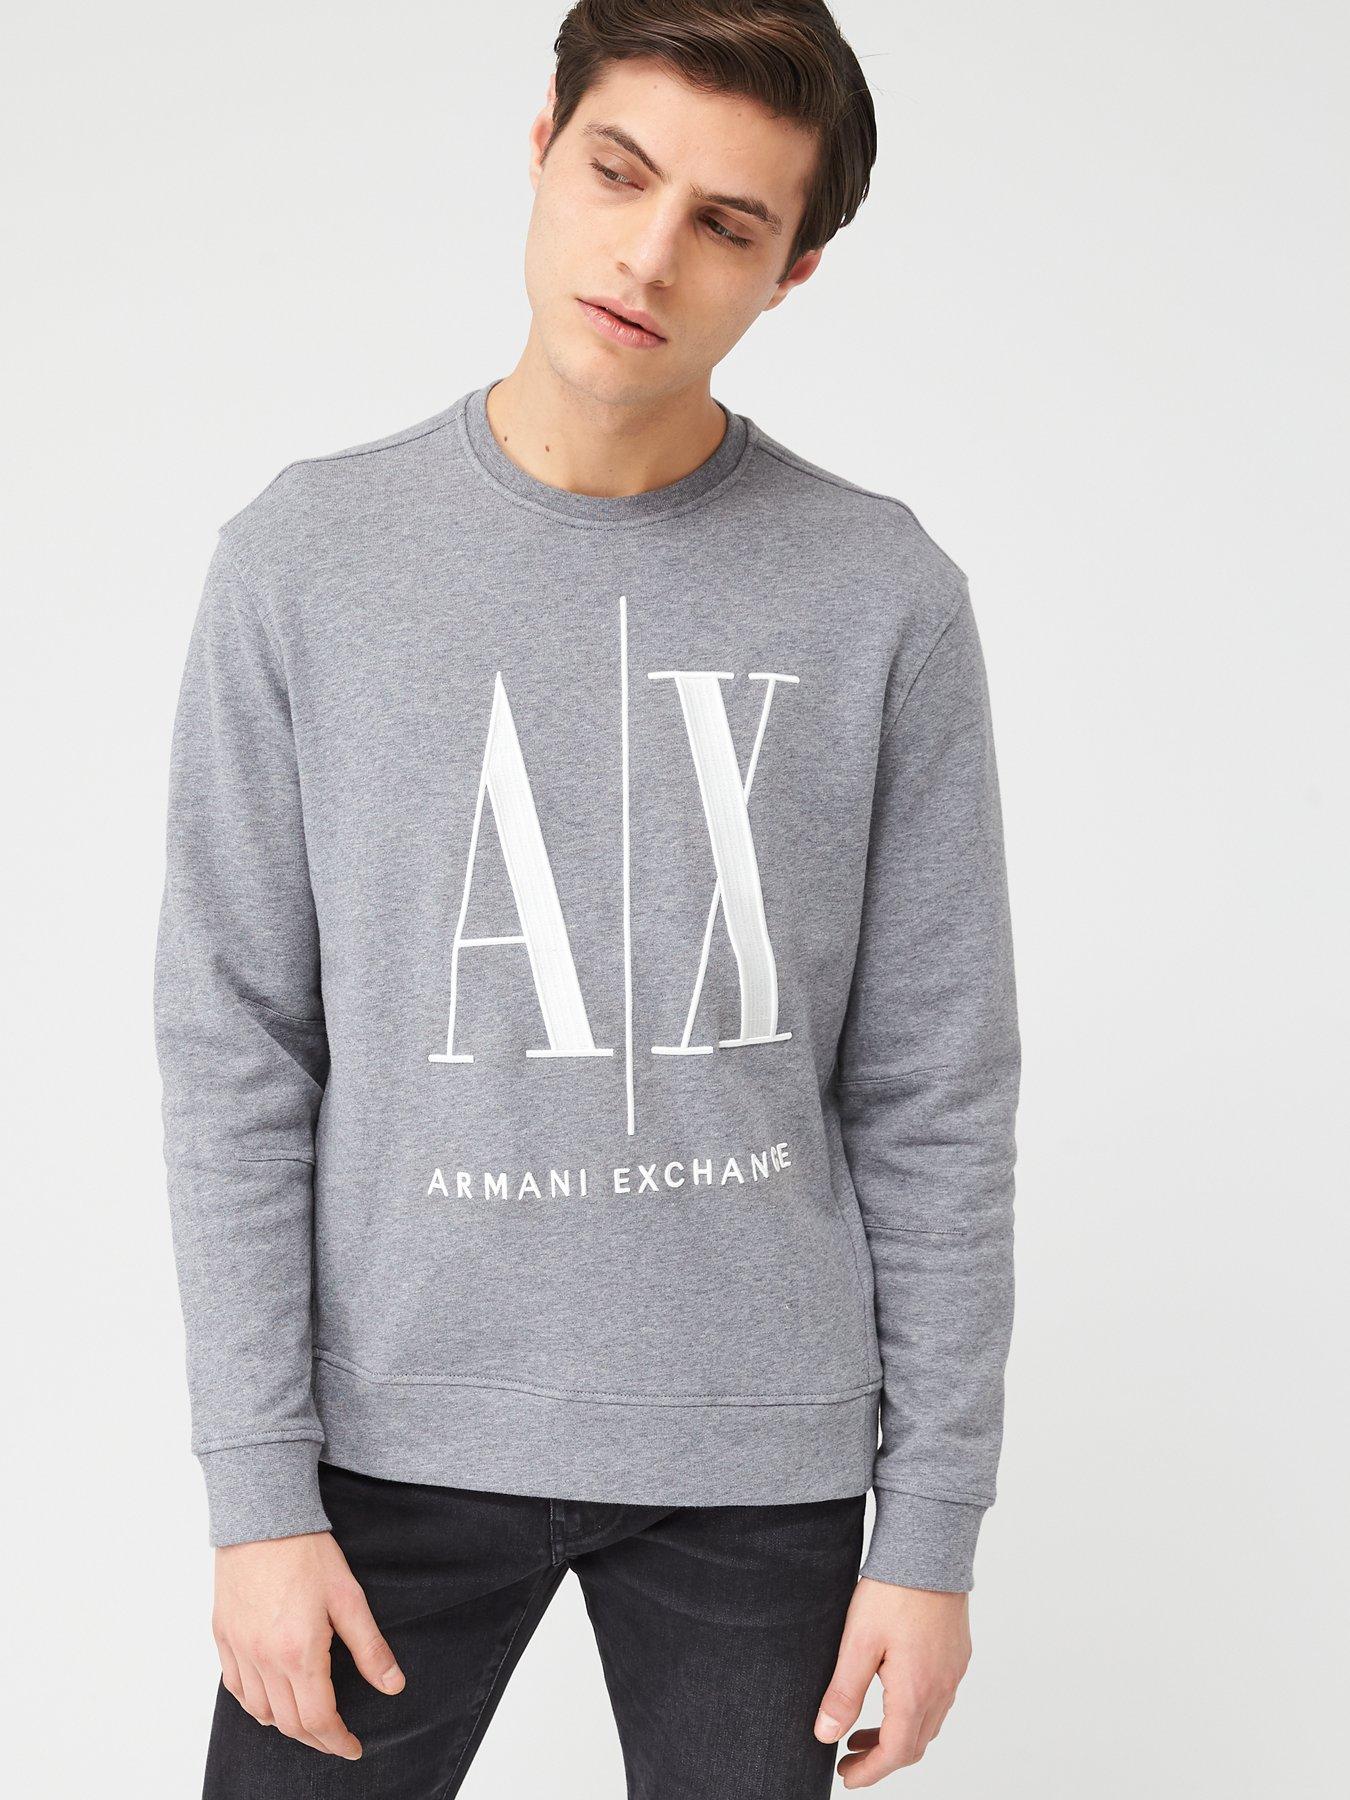 Armani exchange | Hoodies & sweatshirts | Men 